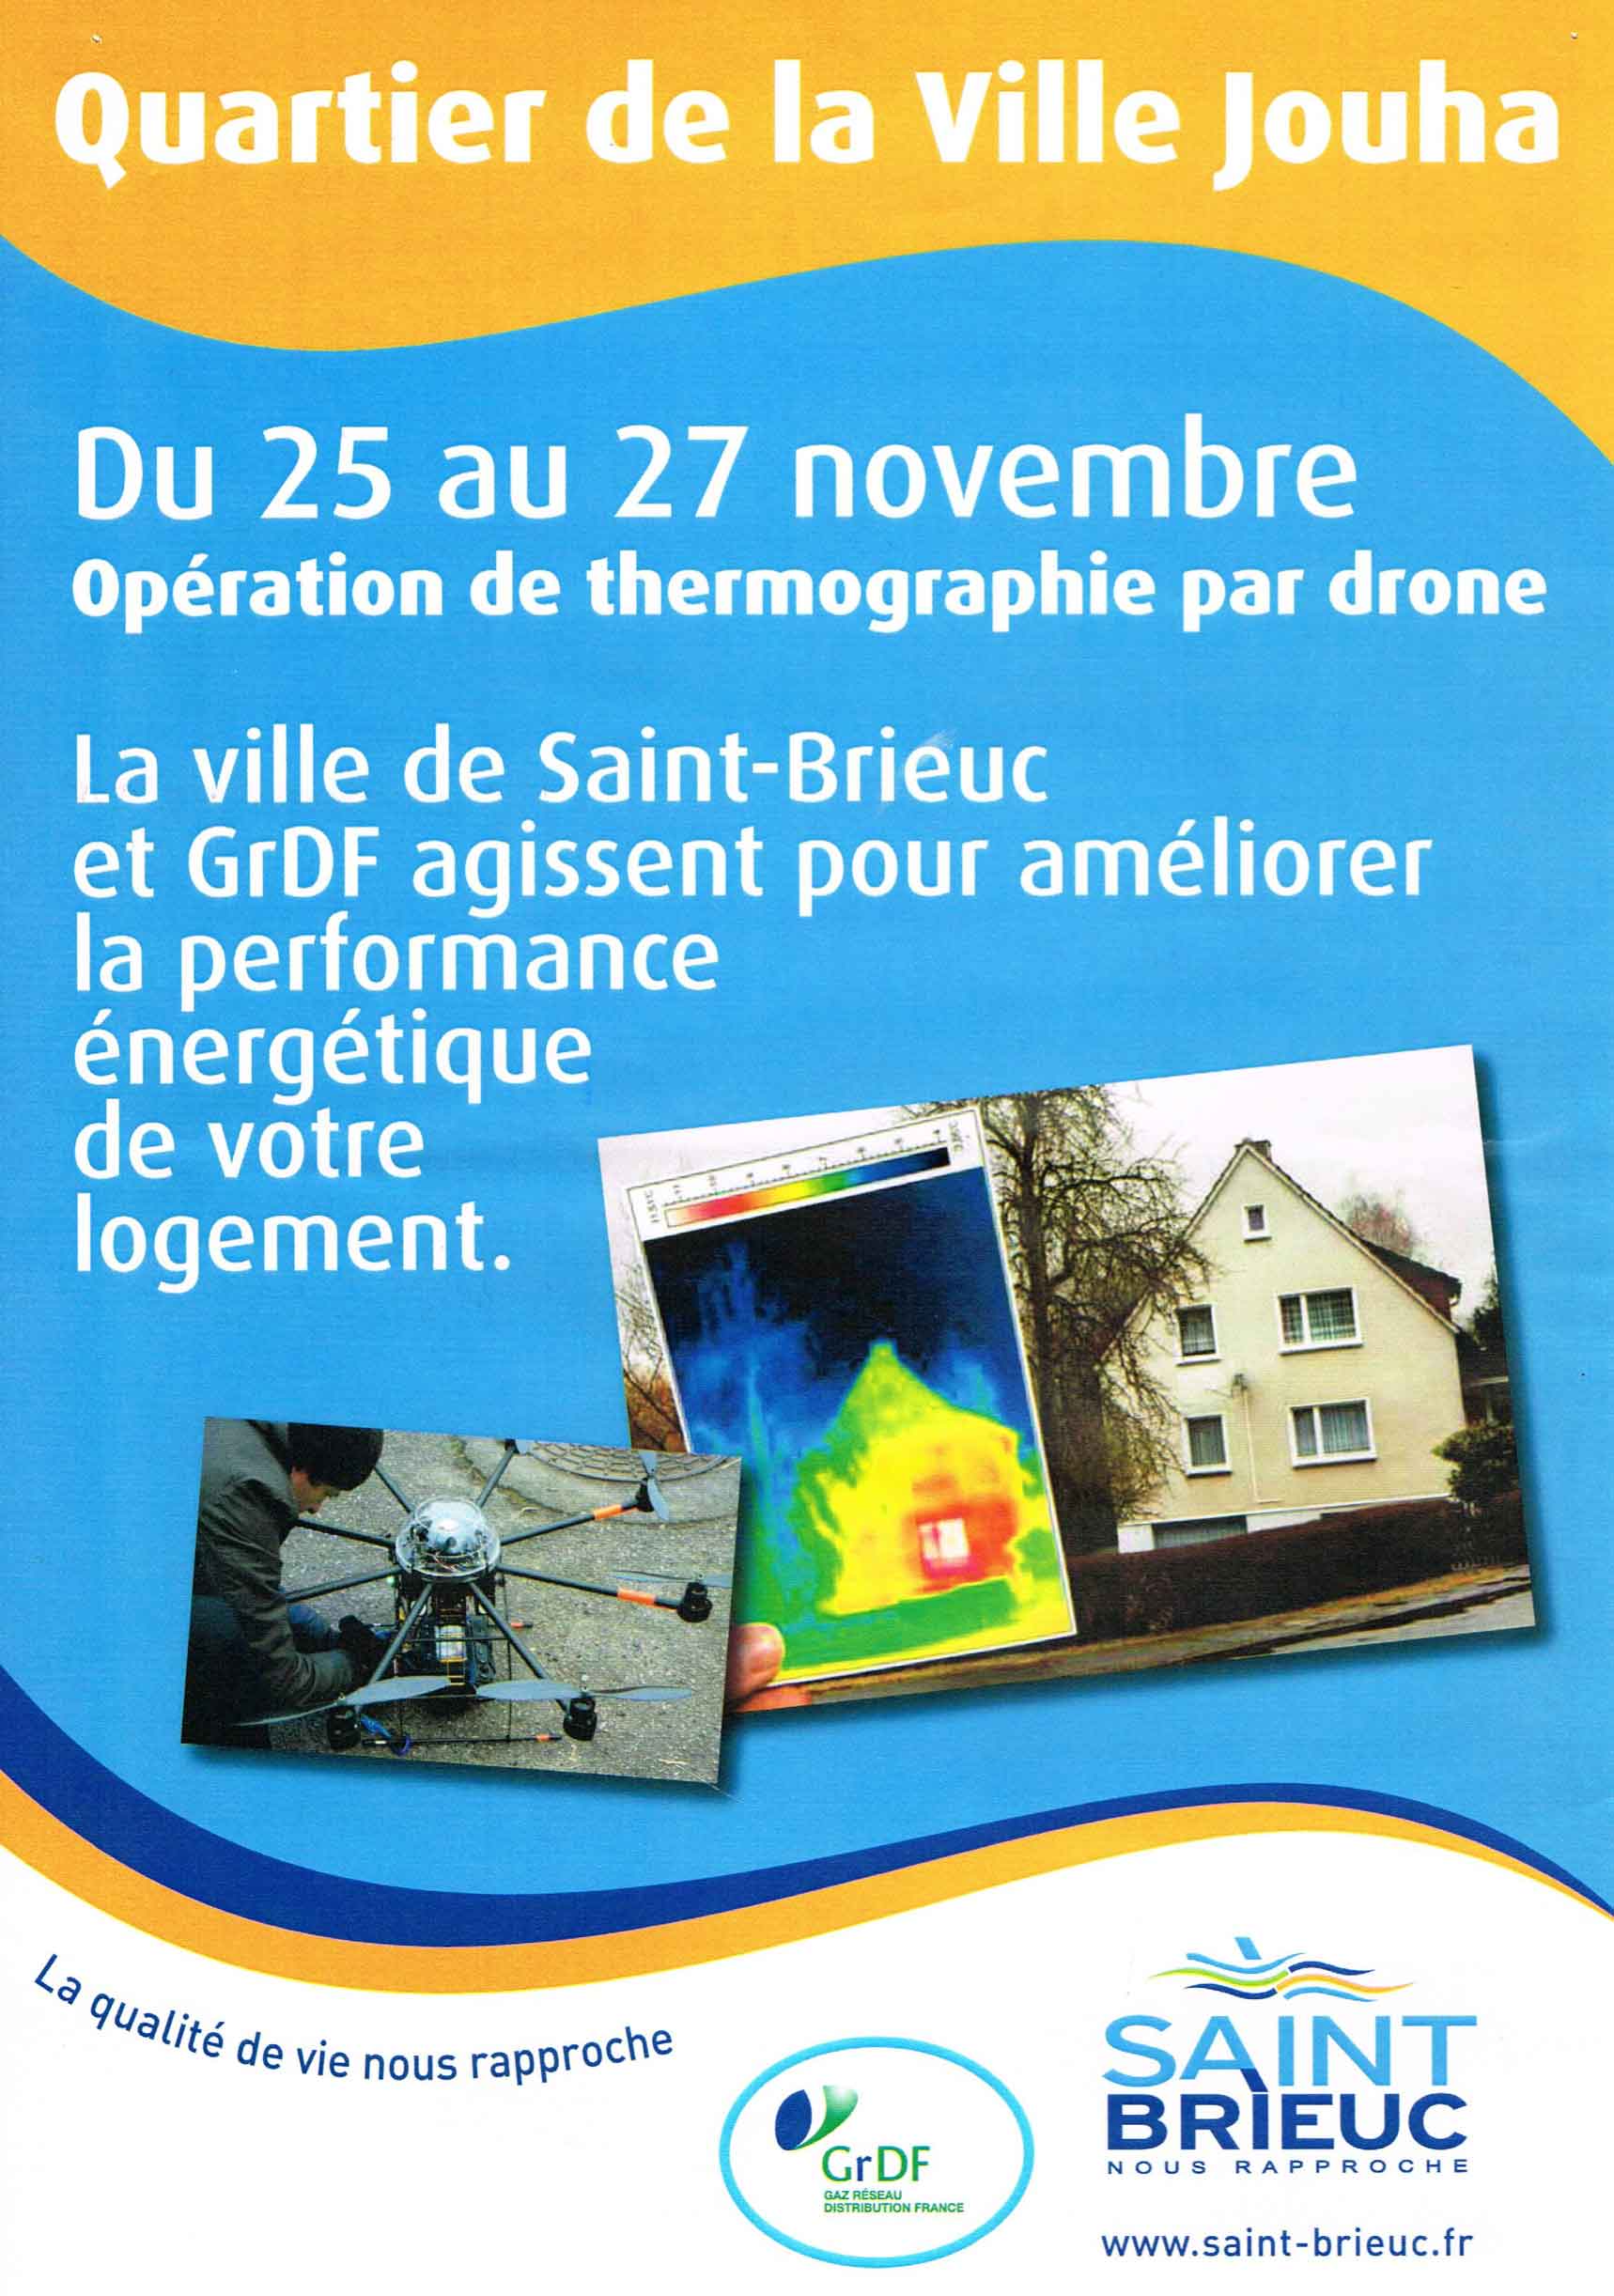 Thermographie par drone de la ville de Saint Brieuc